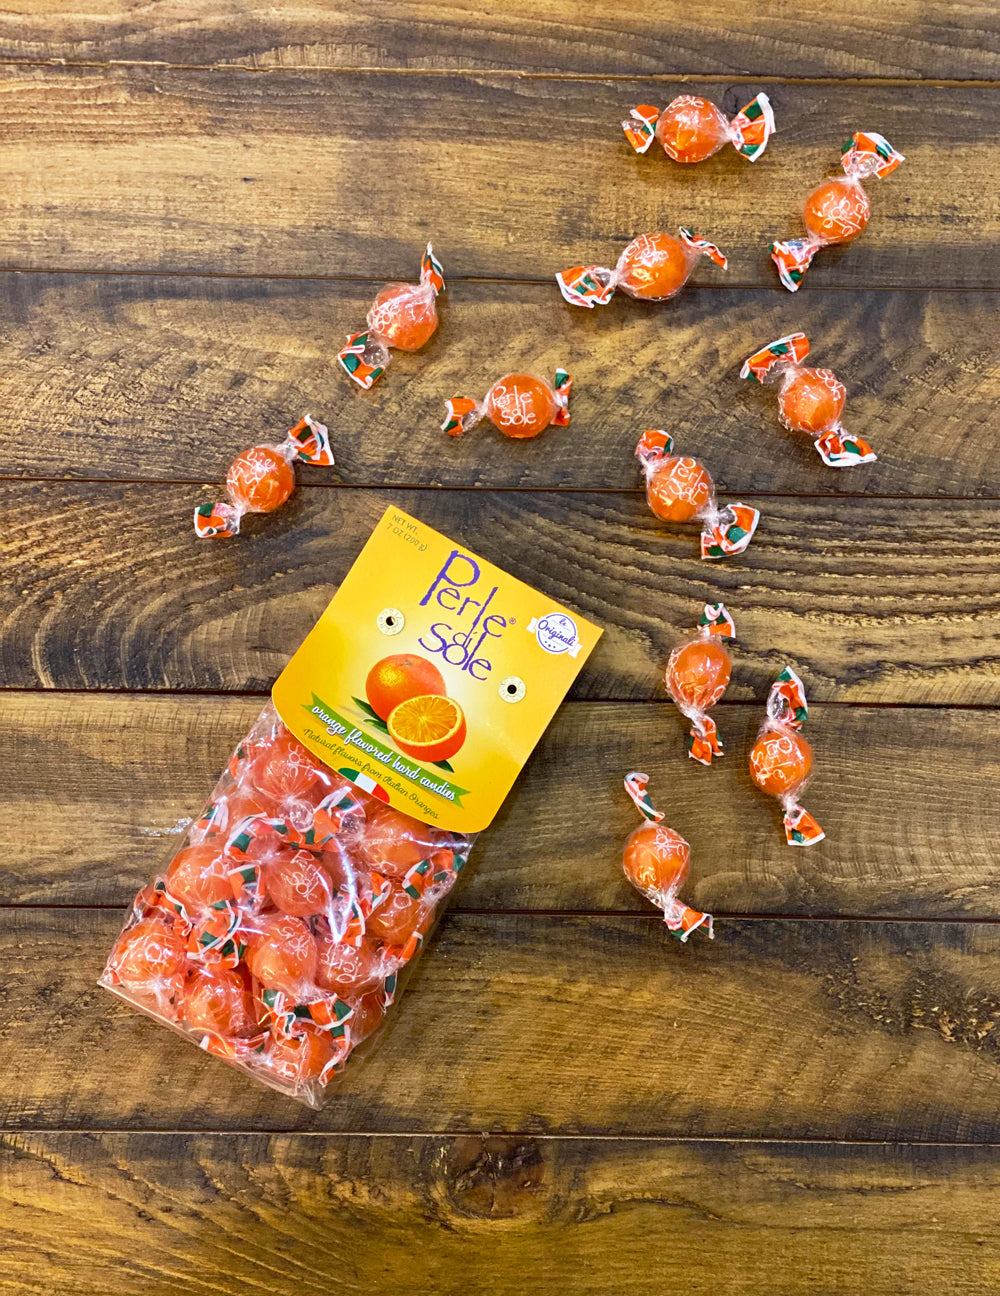 Orange Flavored Hard Candies - Perle di Sole